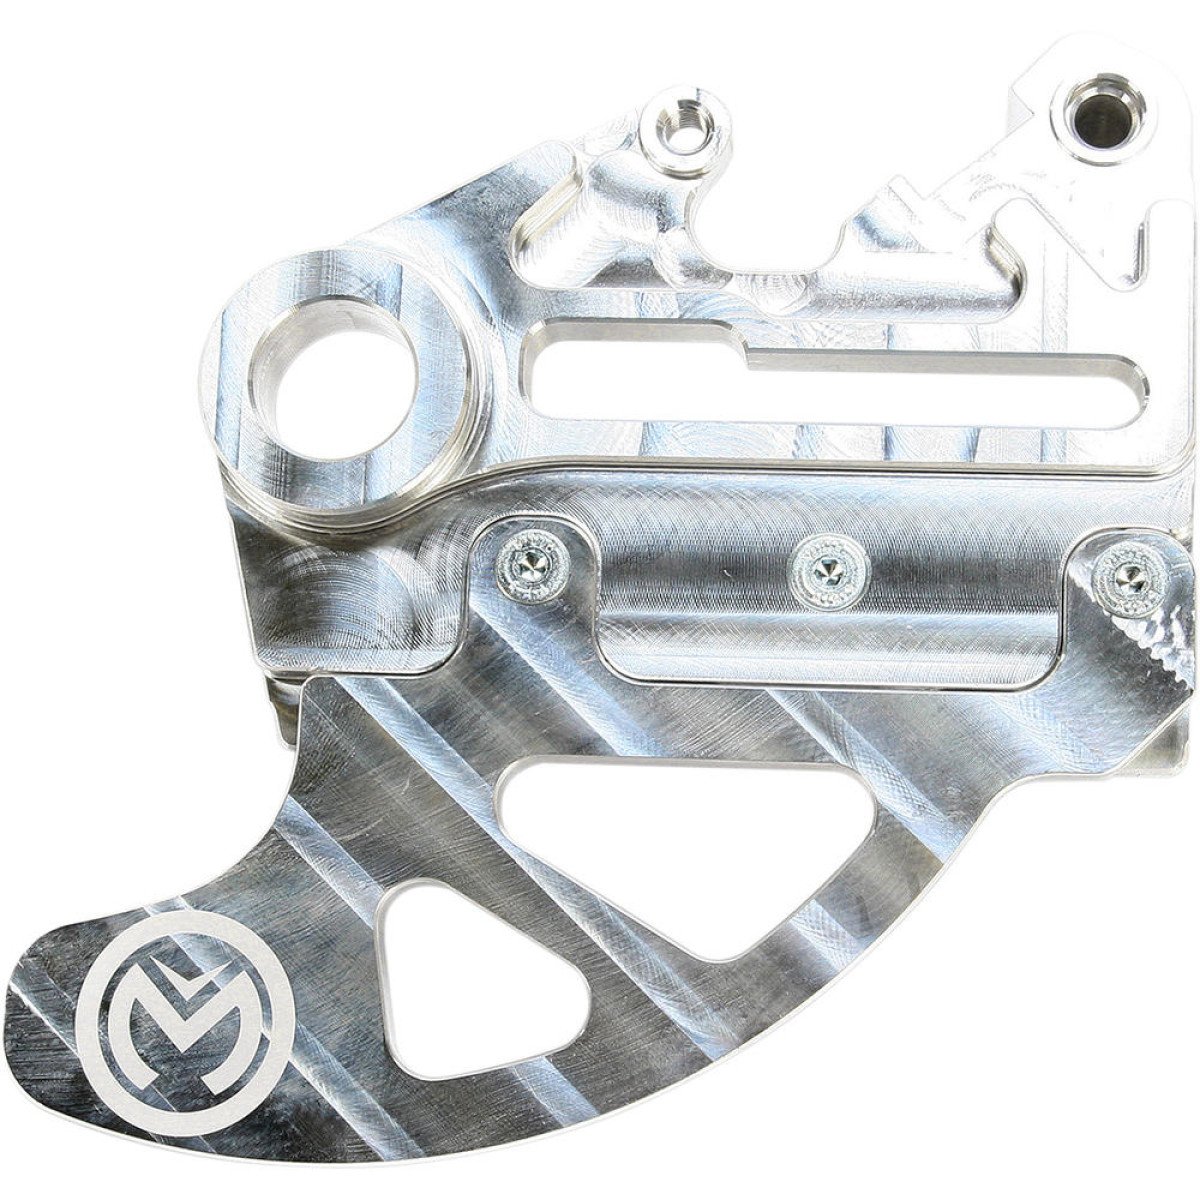 Moose Racing Bremsscheibenschutz Aluminium Sherco 250-510 Enduro 13-17, inkl. Bremssattelträger, Hinten